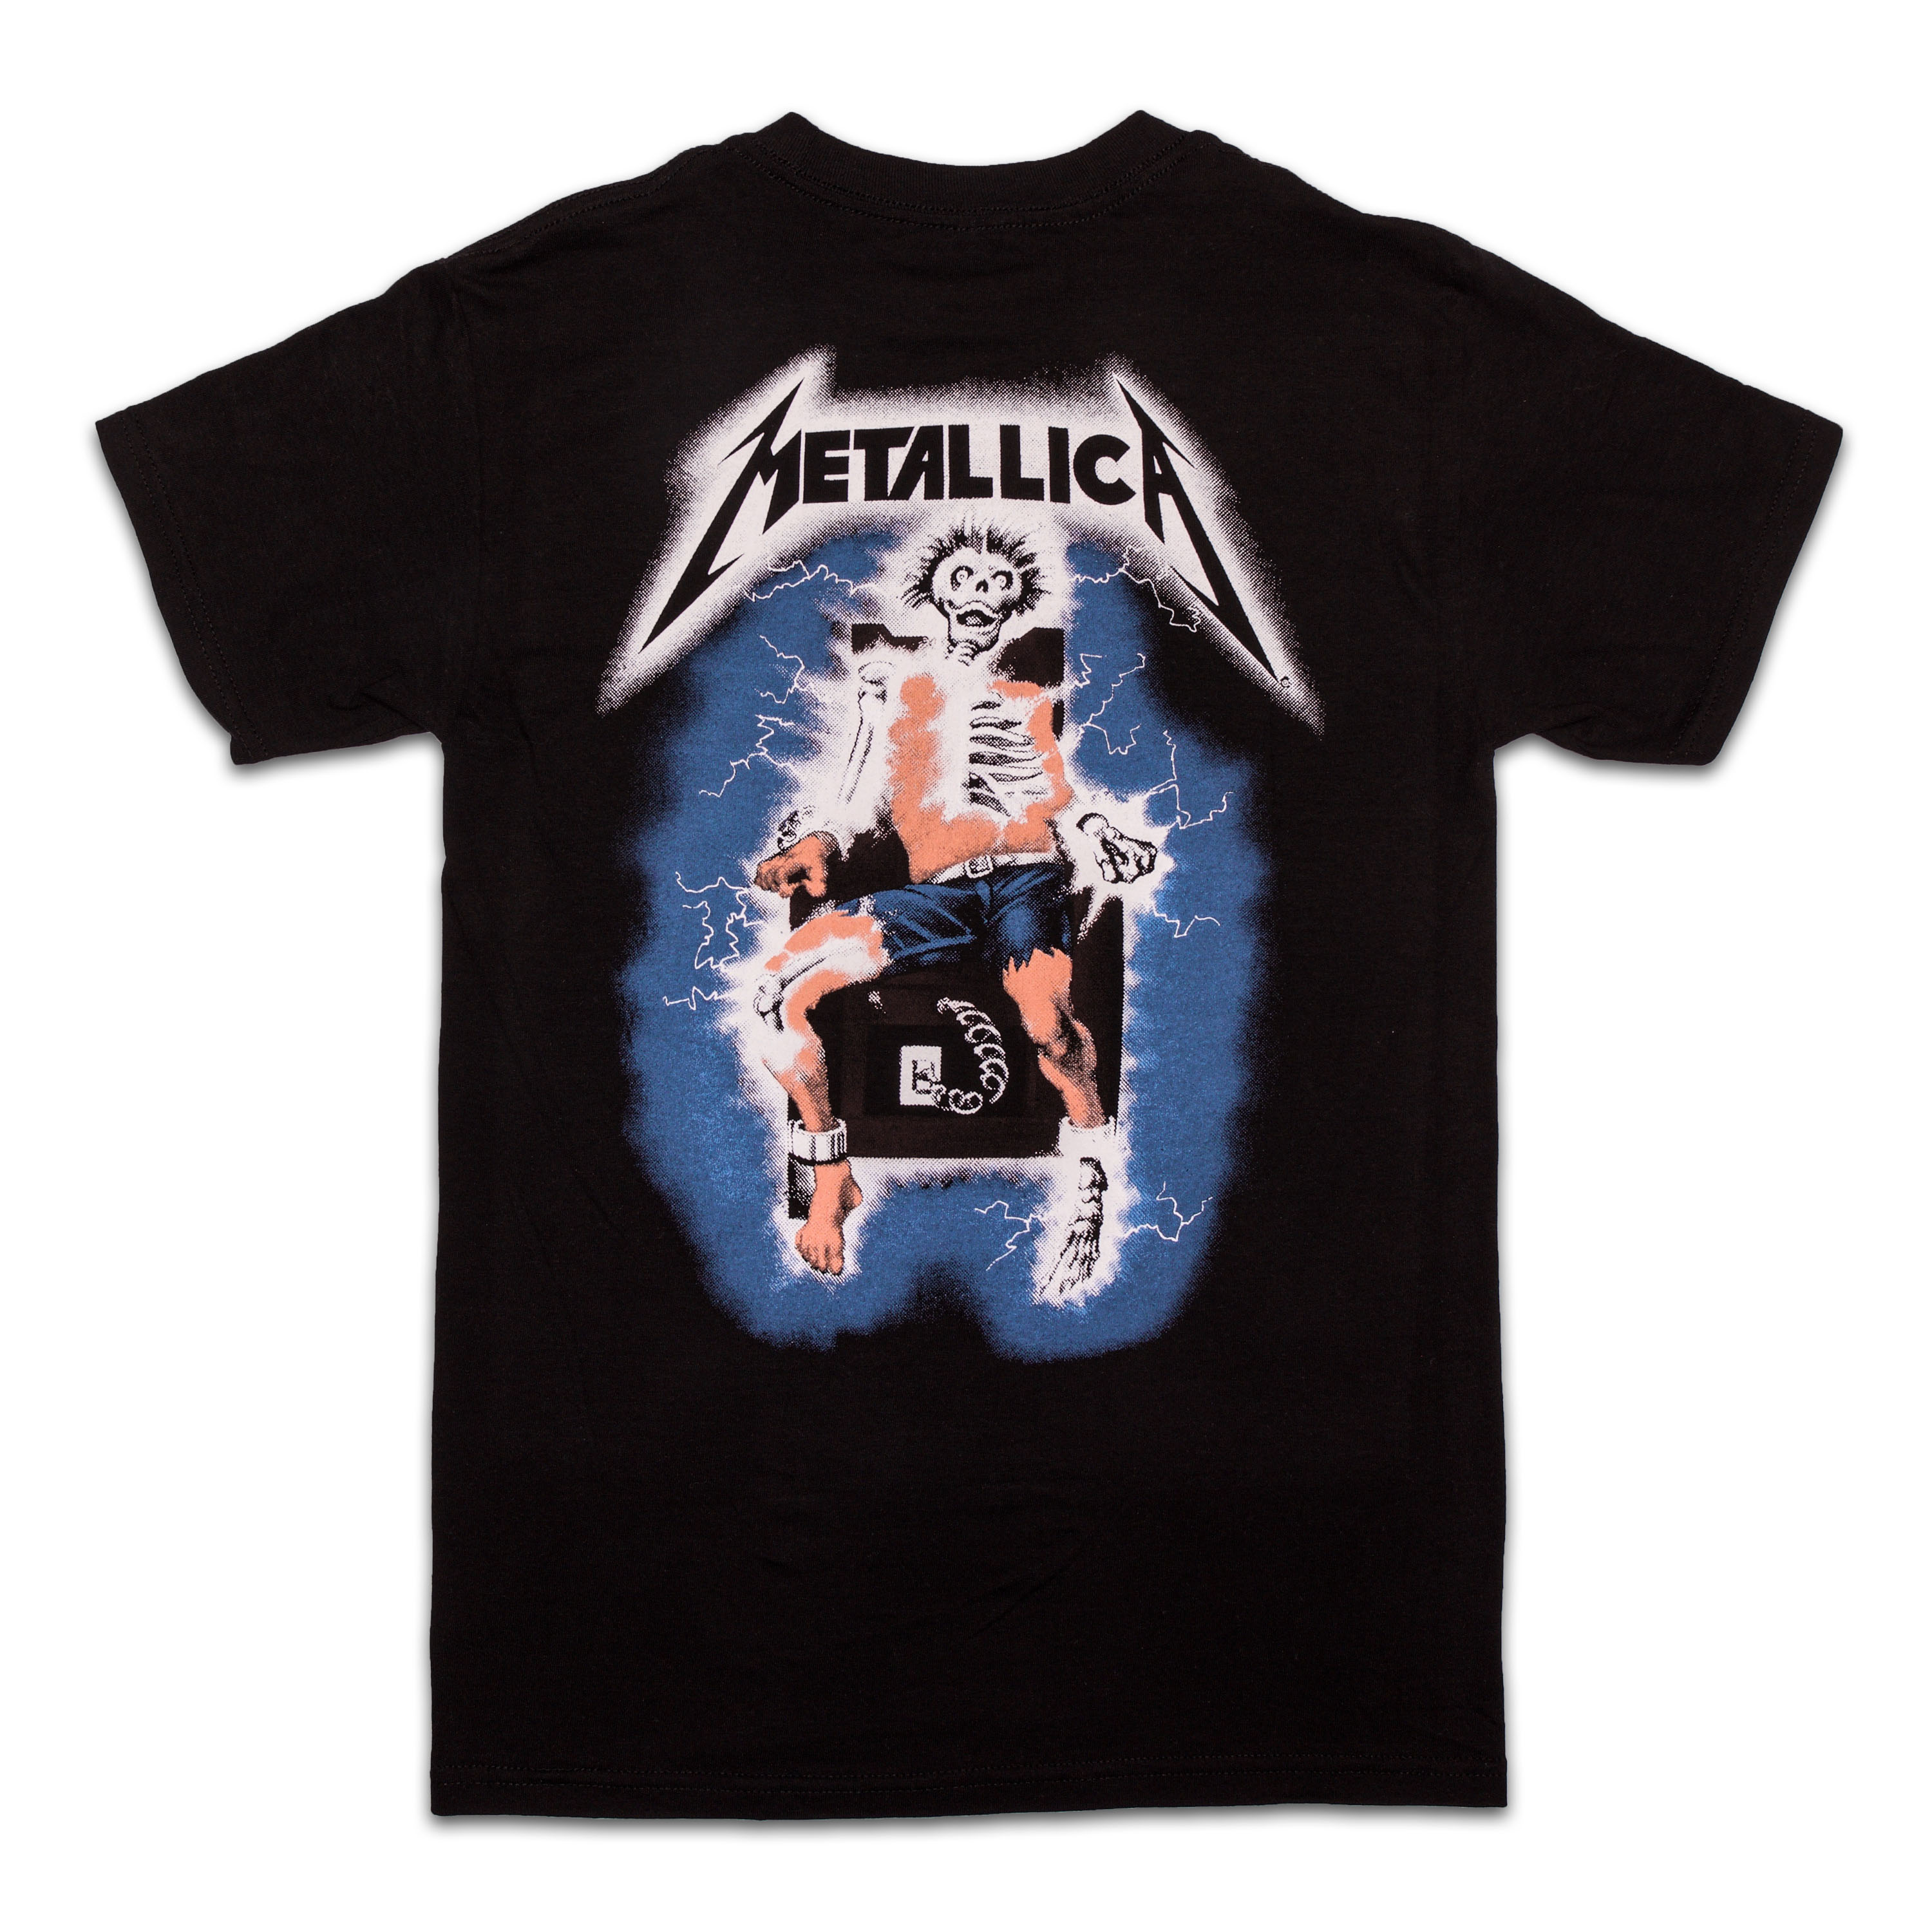 Metal Up Your Ass T-Shirt | Metallica.com